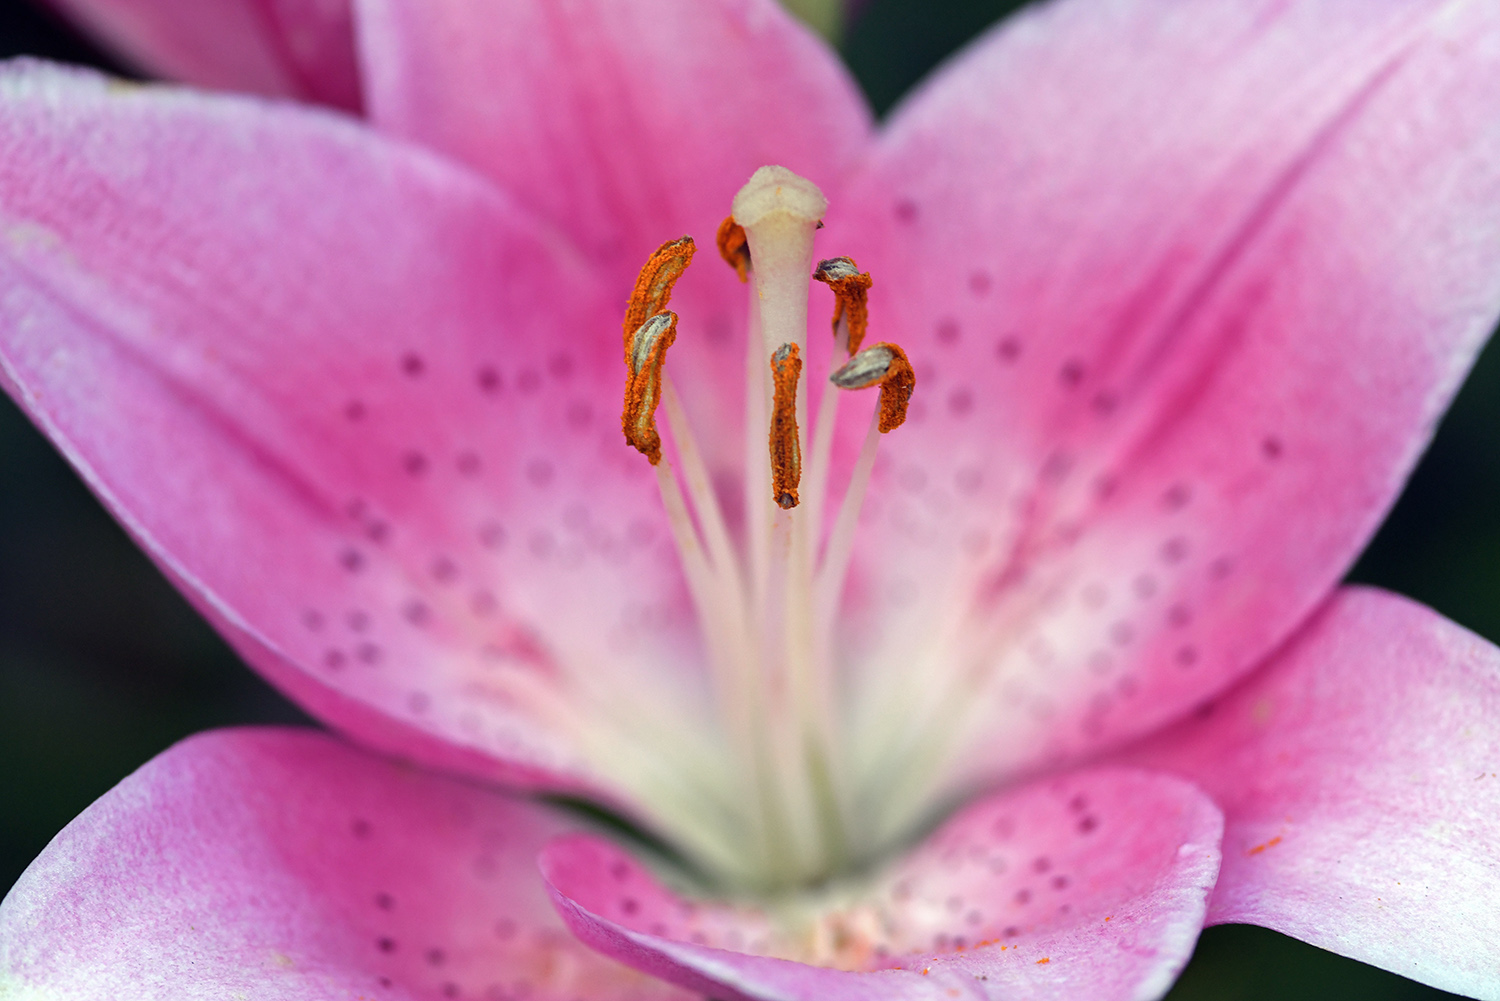 Flower_Blossom_Pink_Stamen_Pollen_Closeup_Garden.jpg